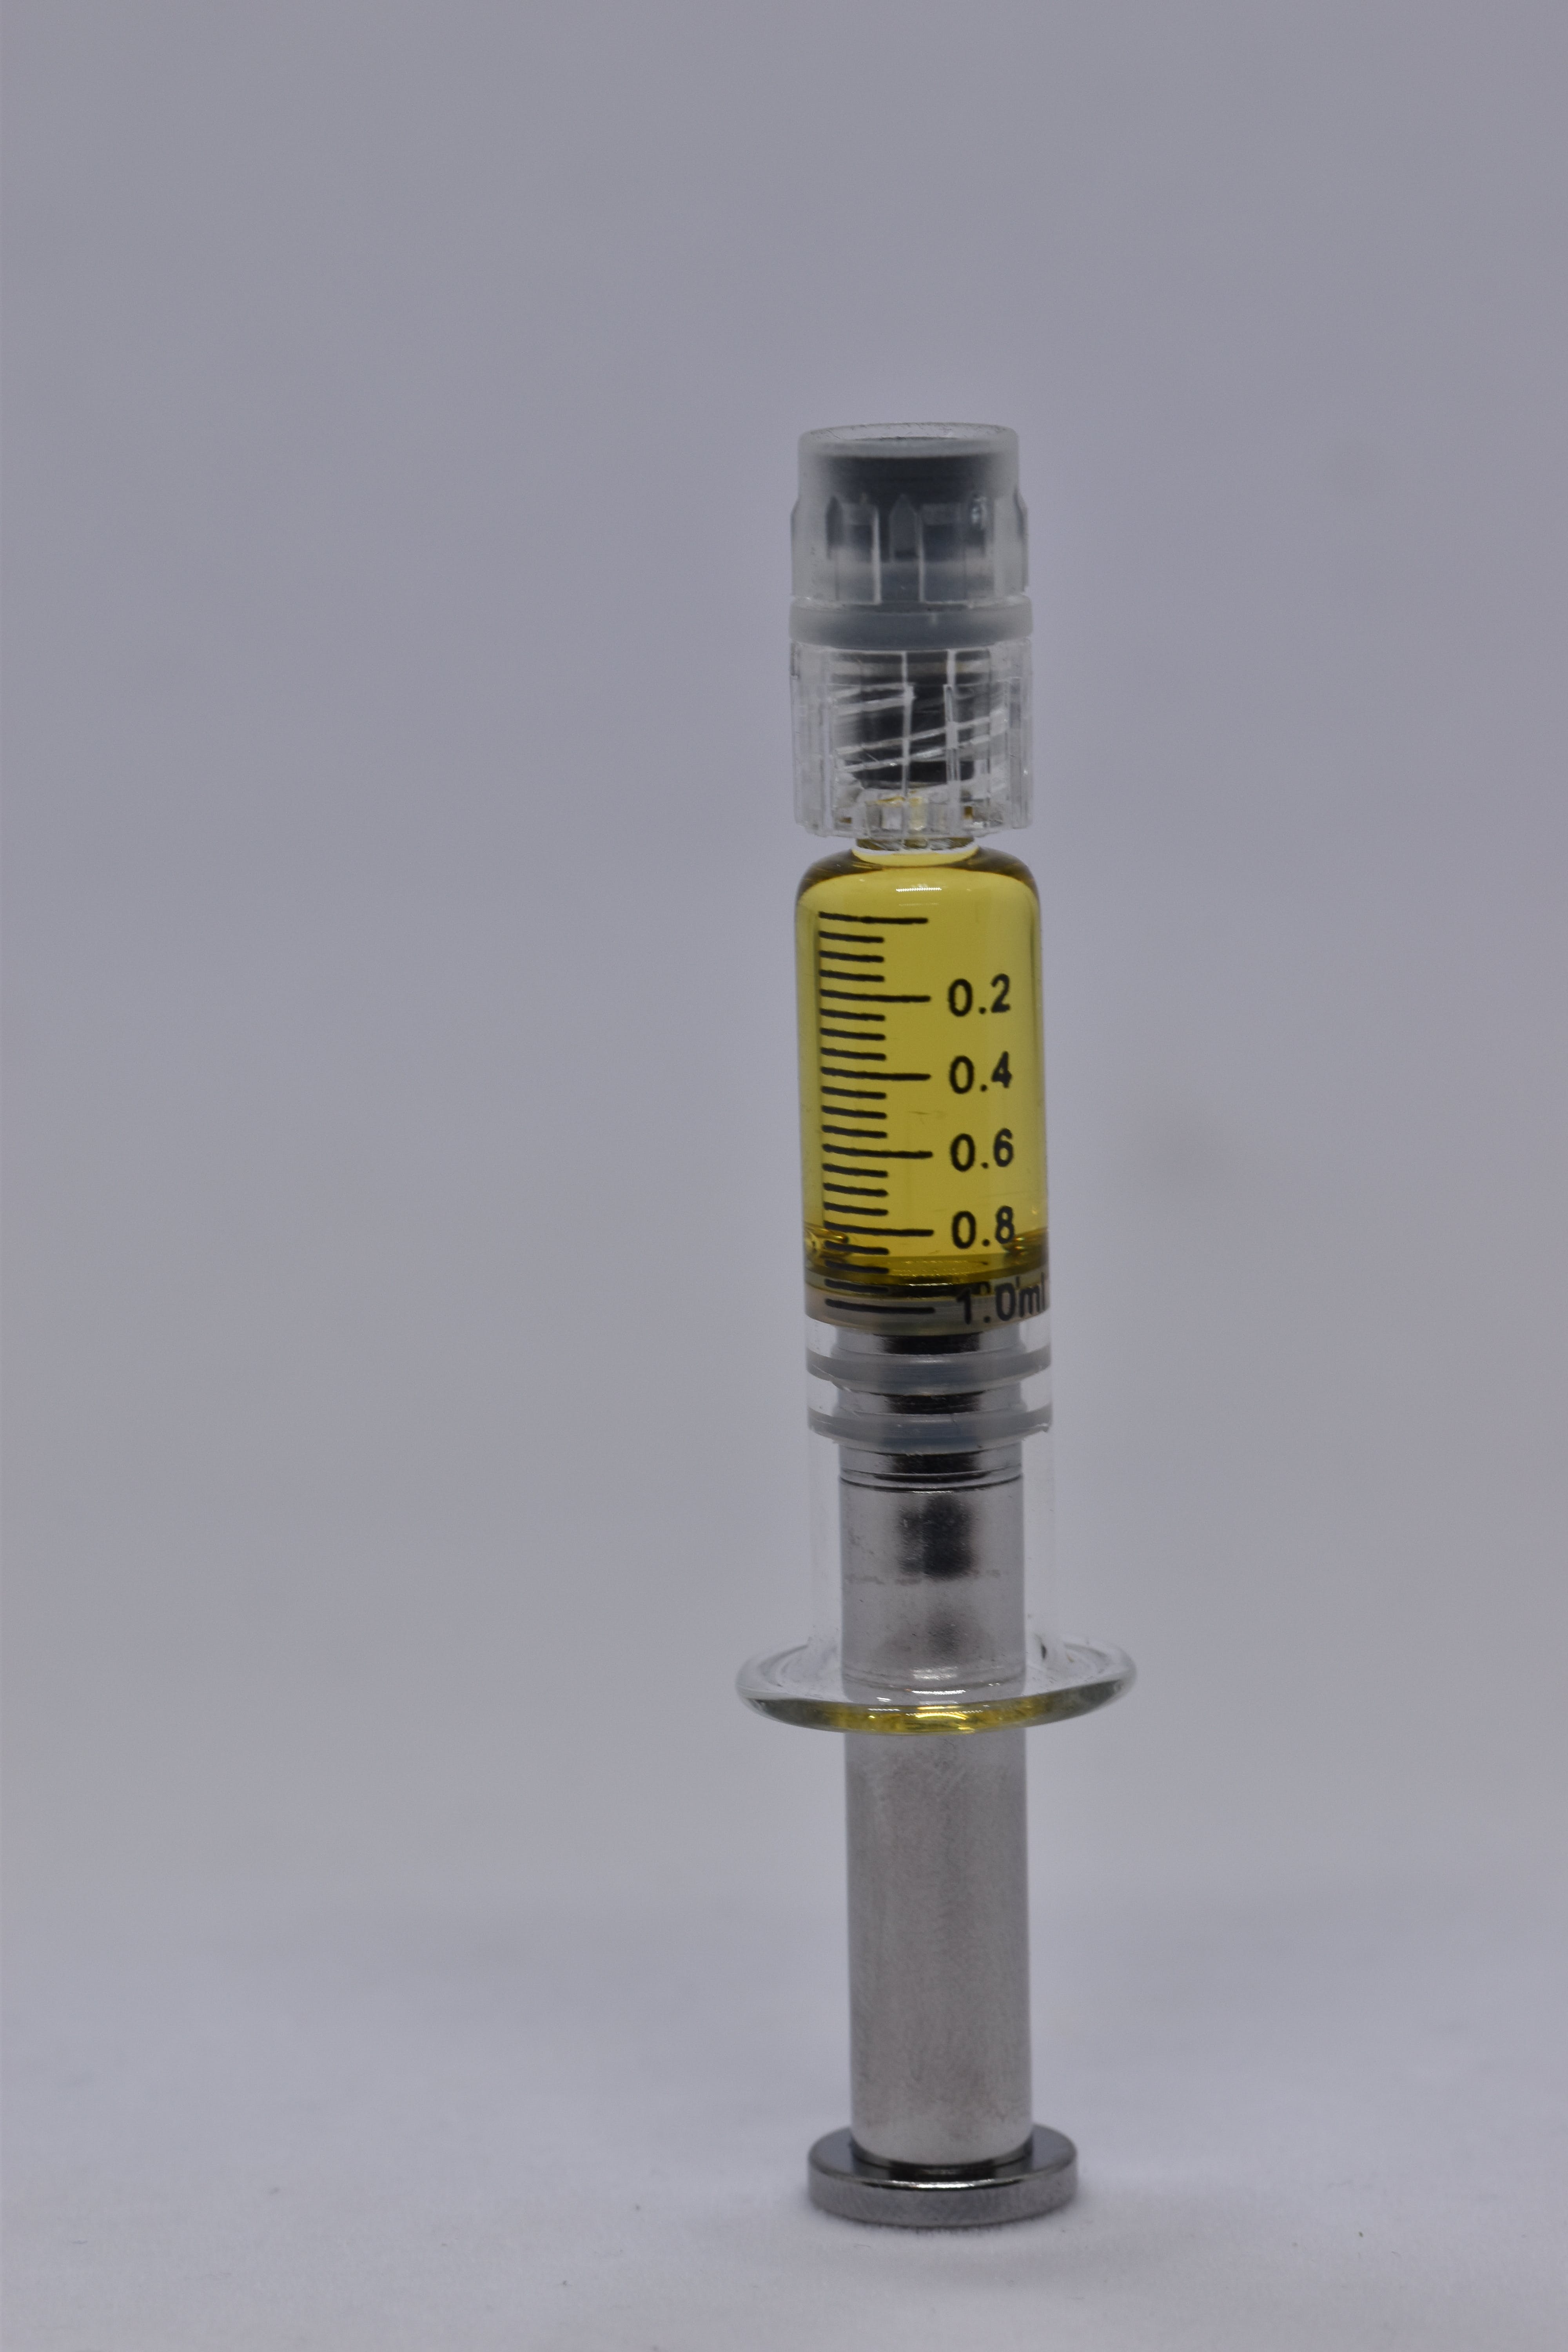 wax-dazed-distillate-syringe-1g